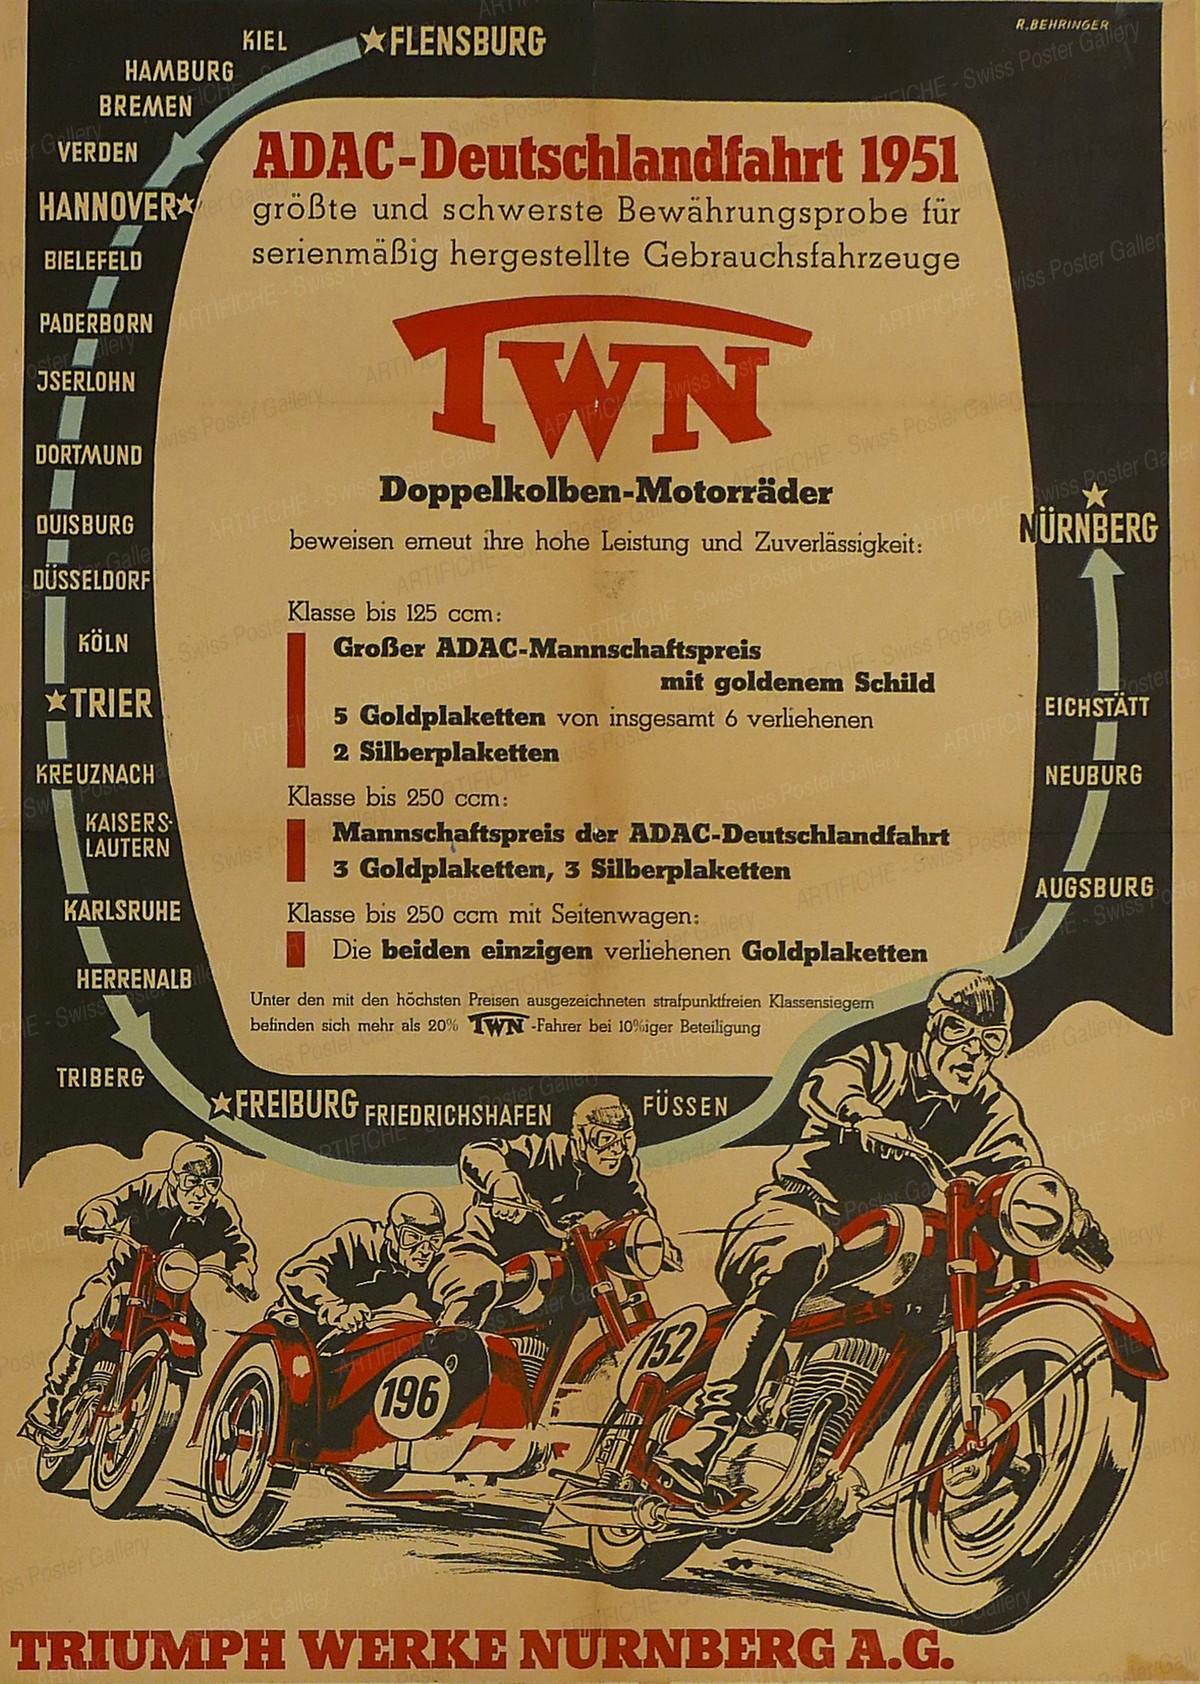 ADAC-Deutschlandfahrt 1951 – Triumph-Werke Nürnberg, R. Behringer